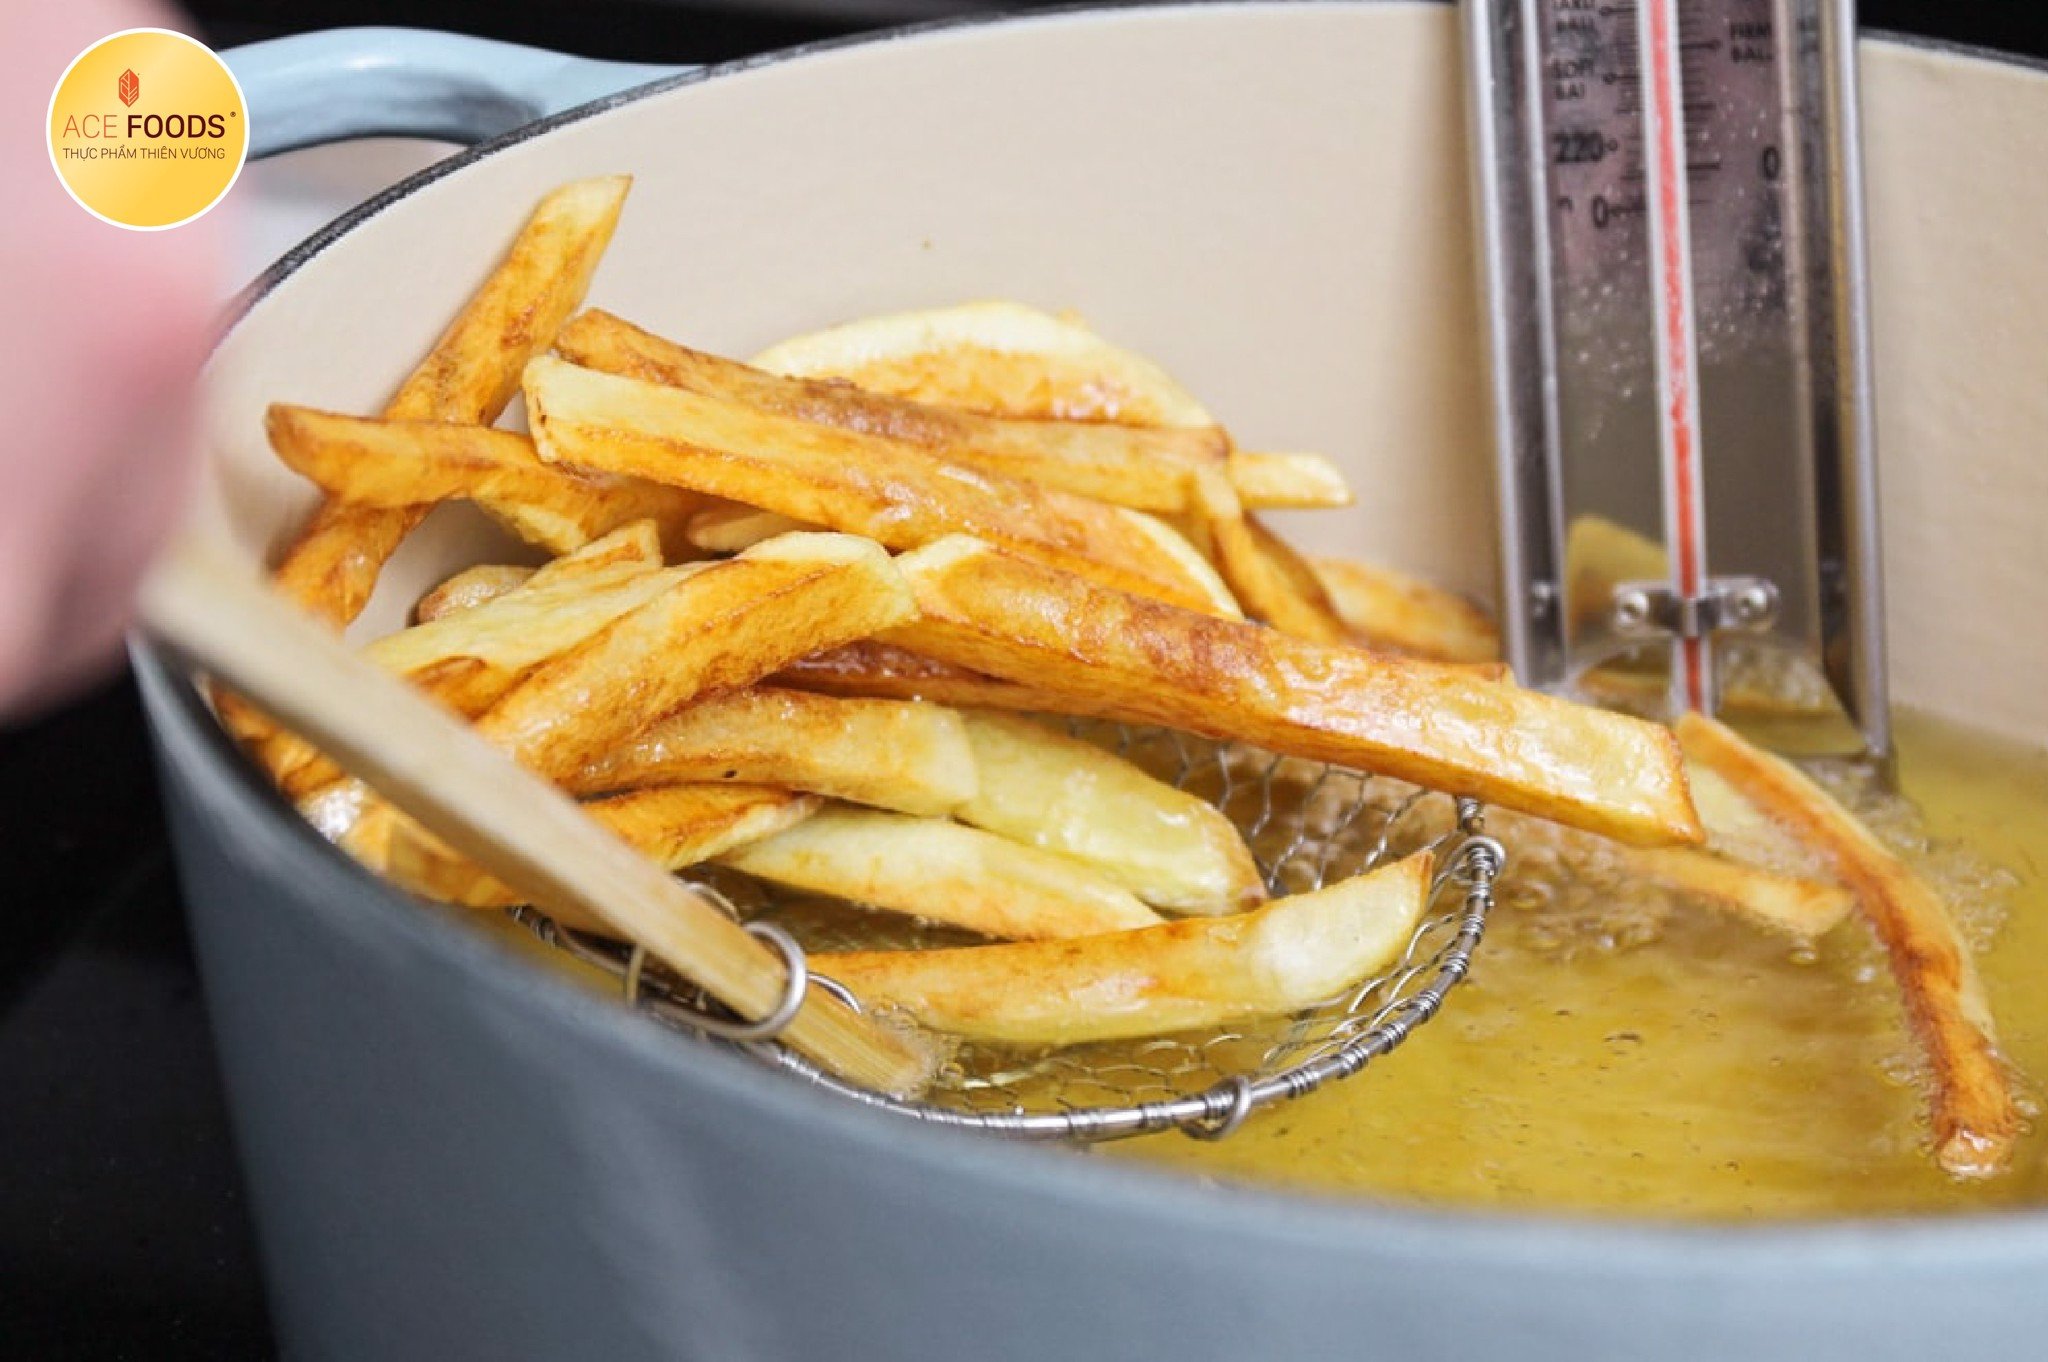 Khoai tây sợi Bỉ Super Crunch vàng giòn, giữ được độ nóng lâu hơn và không bị ngấm dầu